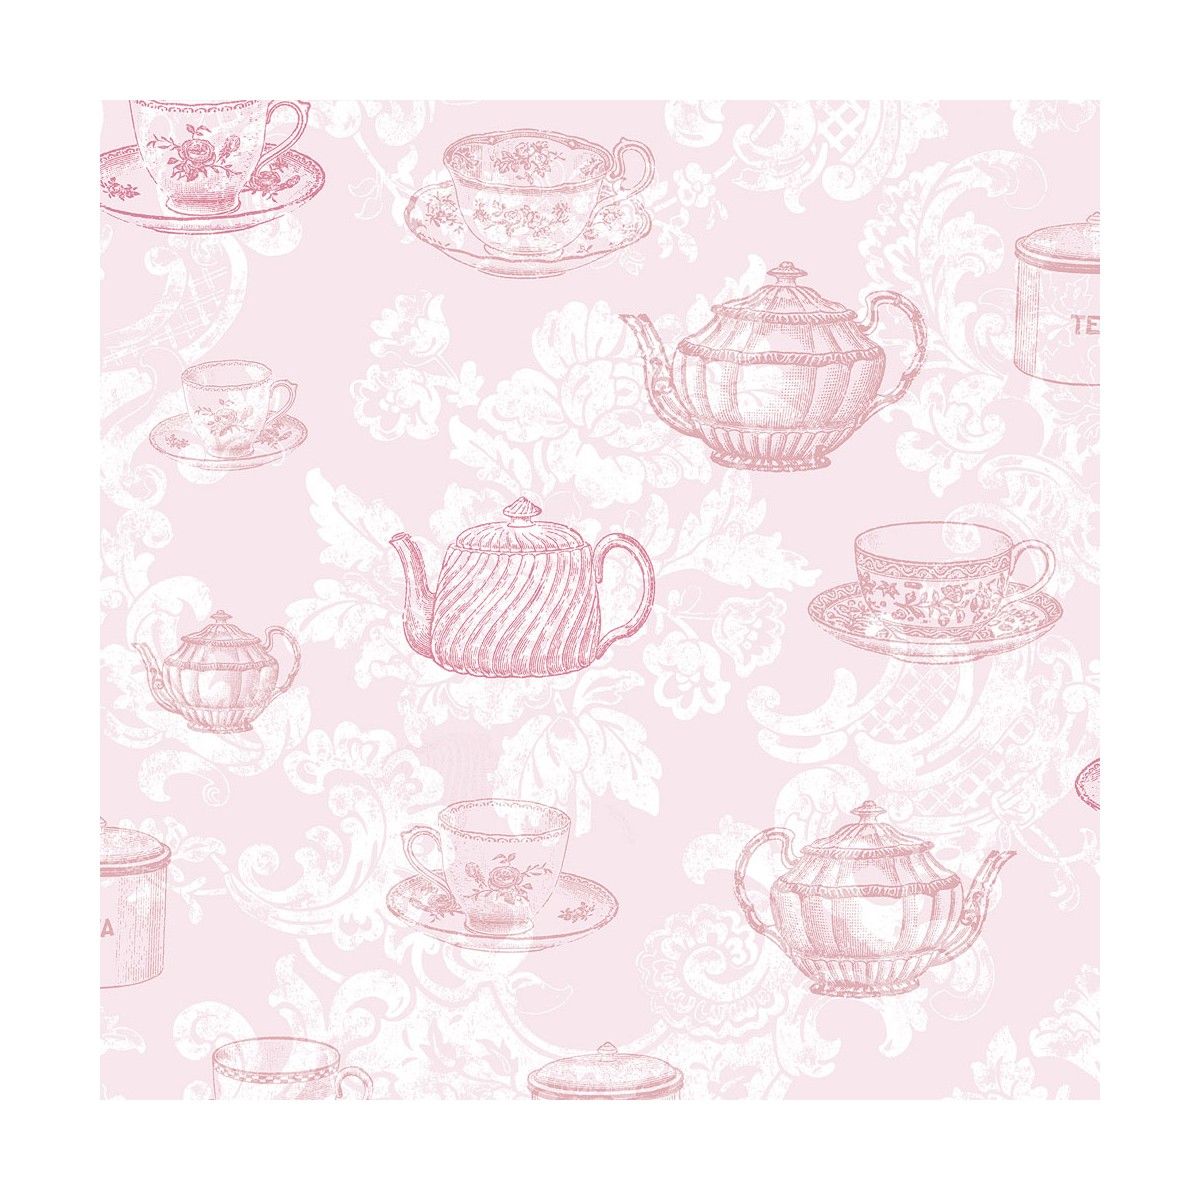 teacups-pink-wallpaper.jpg